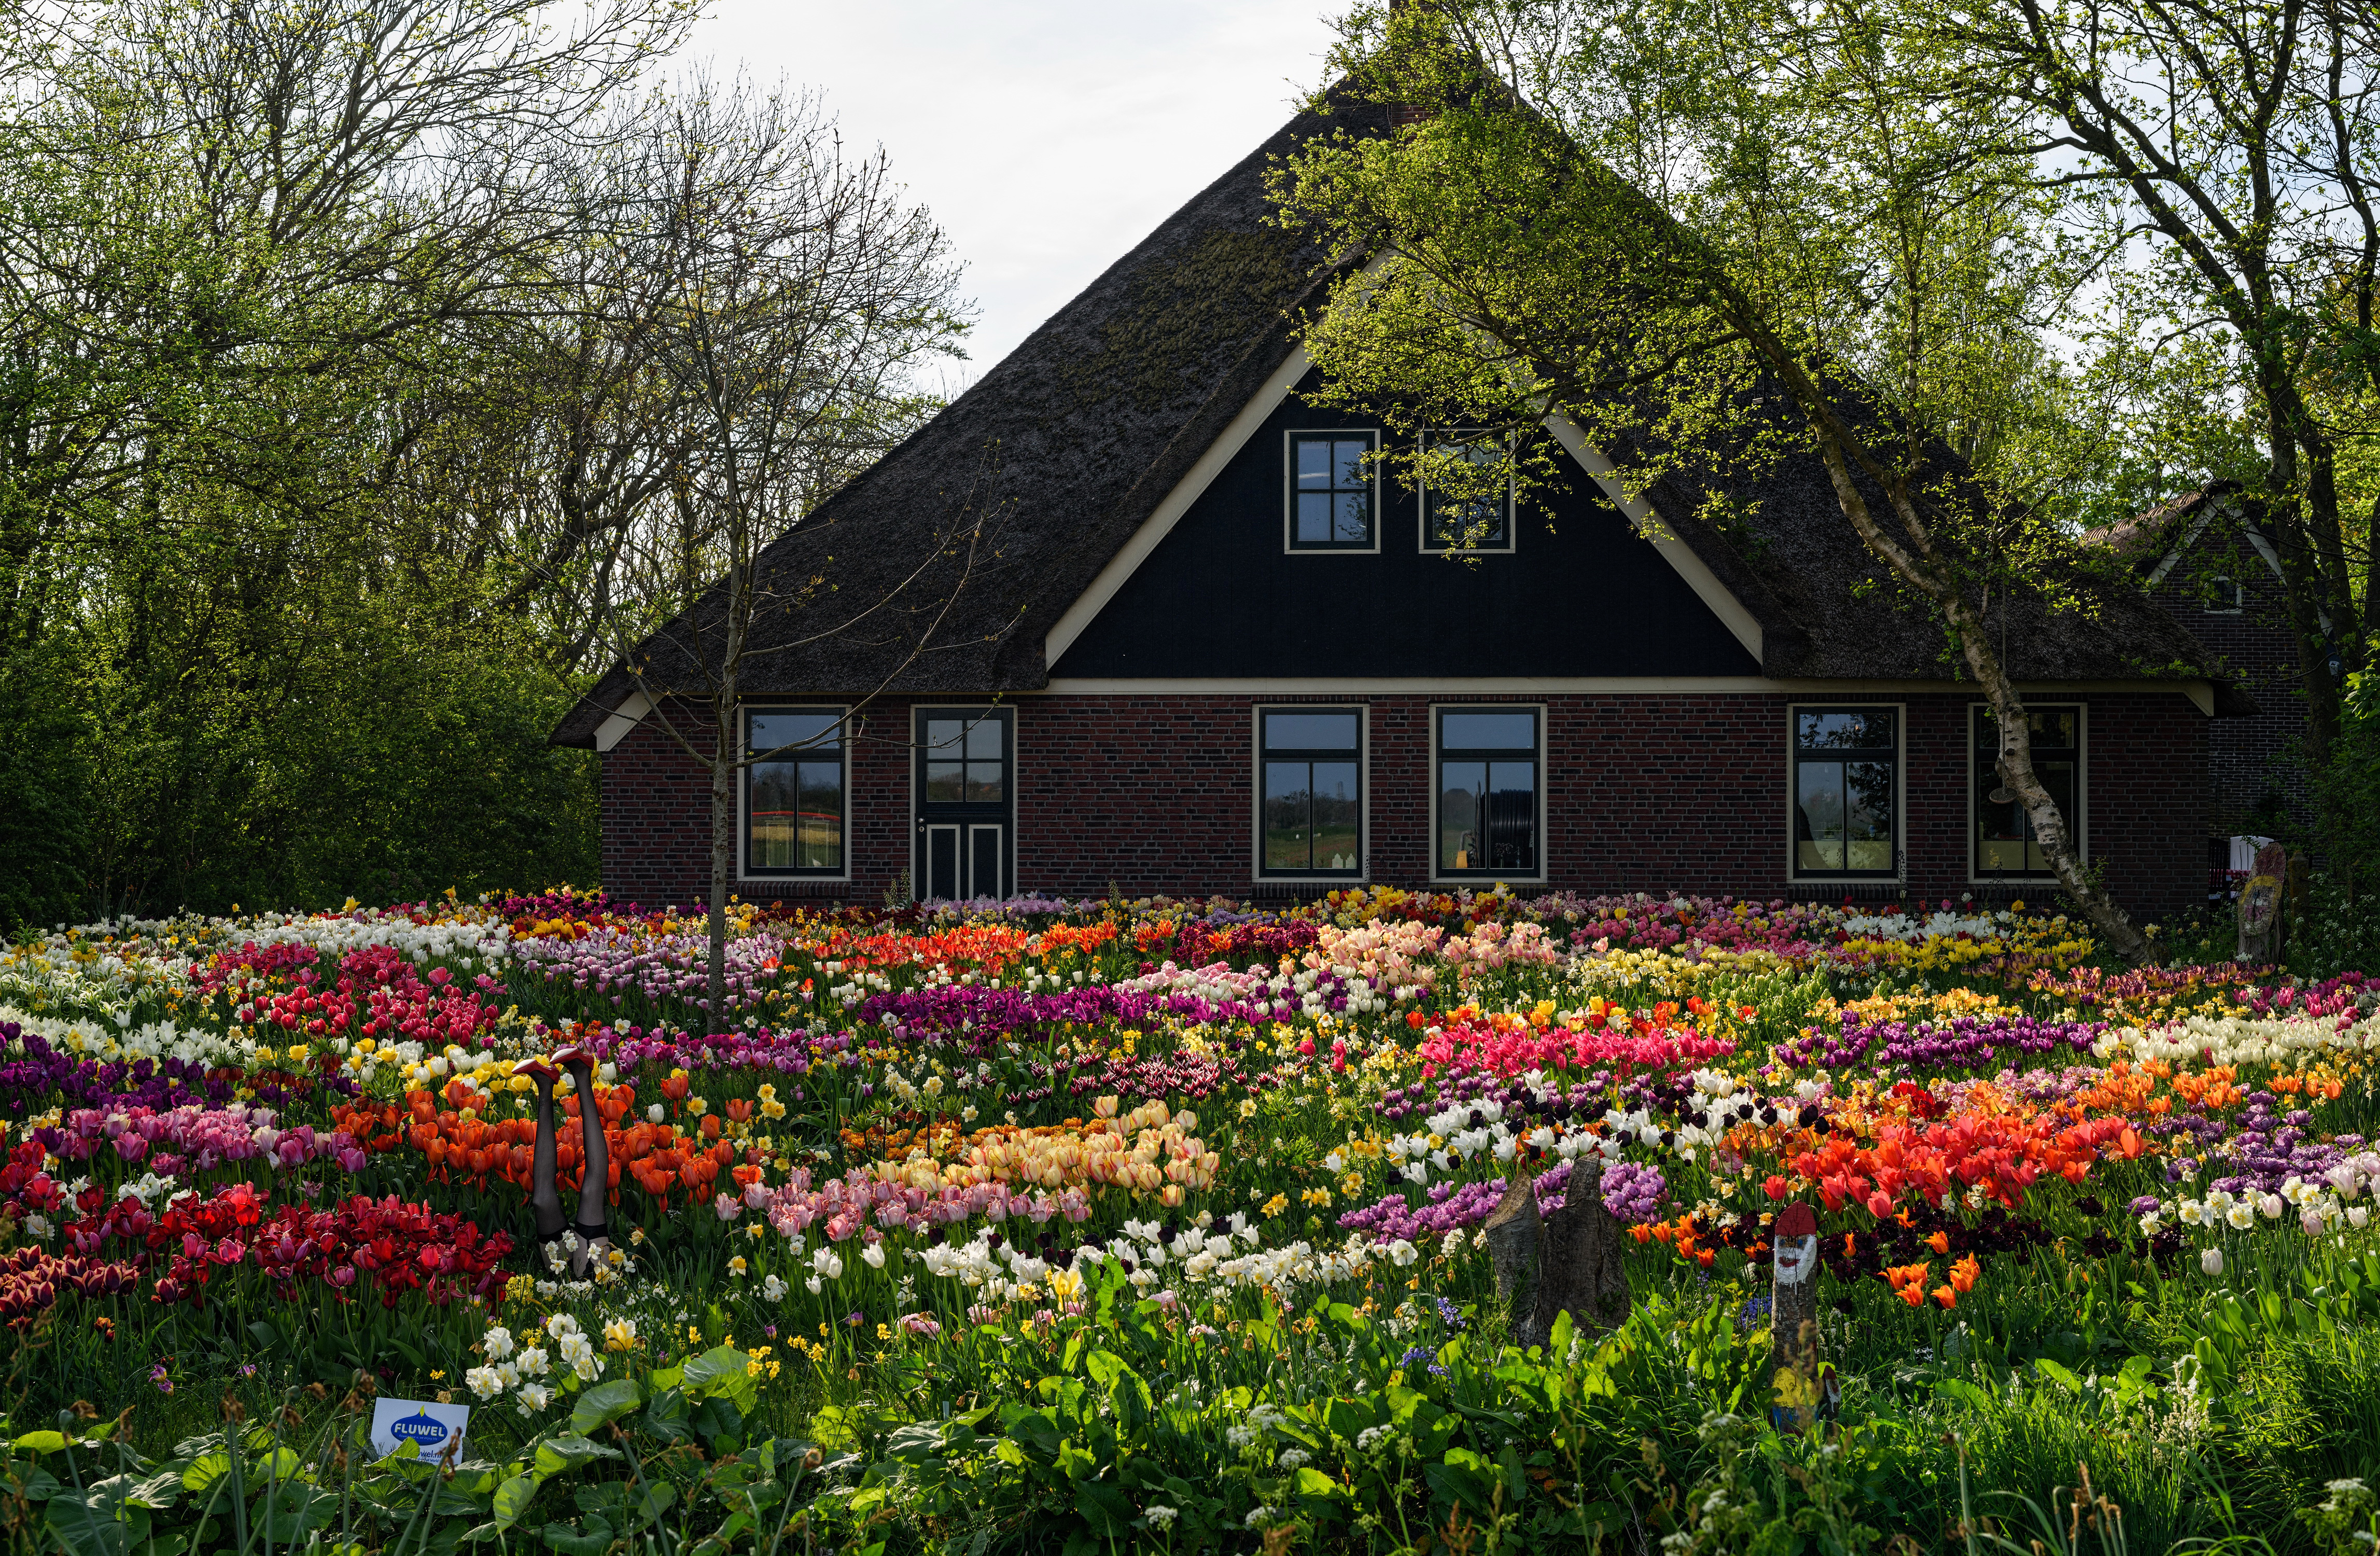 Скачать обои бесплатно Цветок, Дом, Сад, Тюльпан, Нидерланды, Амстердам, Сделано Человеком картинка на рабочий стол ПК